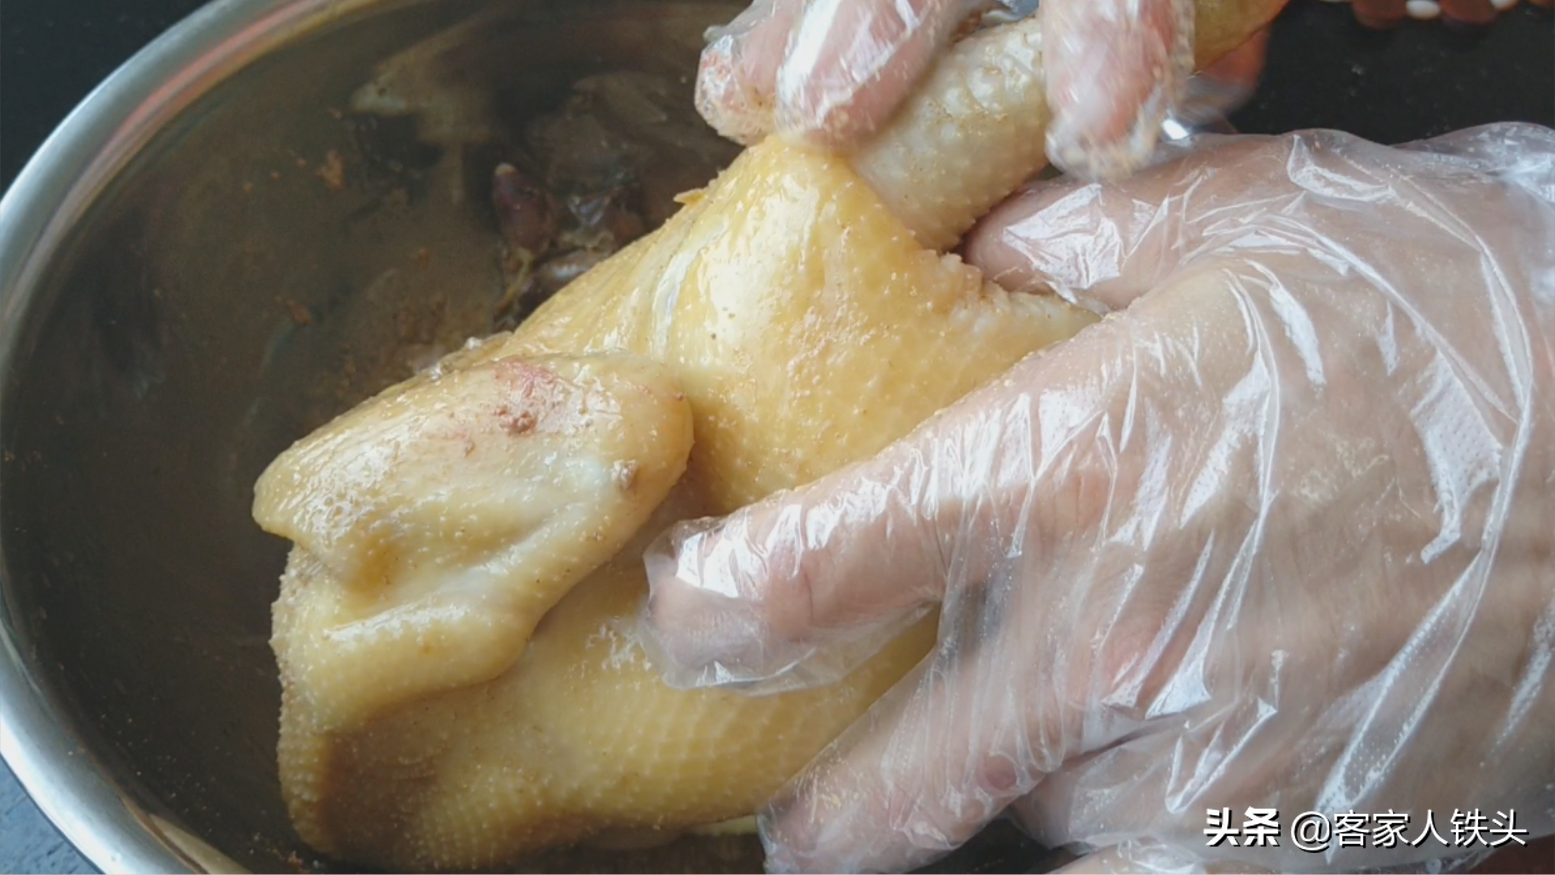 盐焗鸡怎么做 怎么做盐焗鸡做法